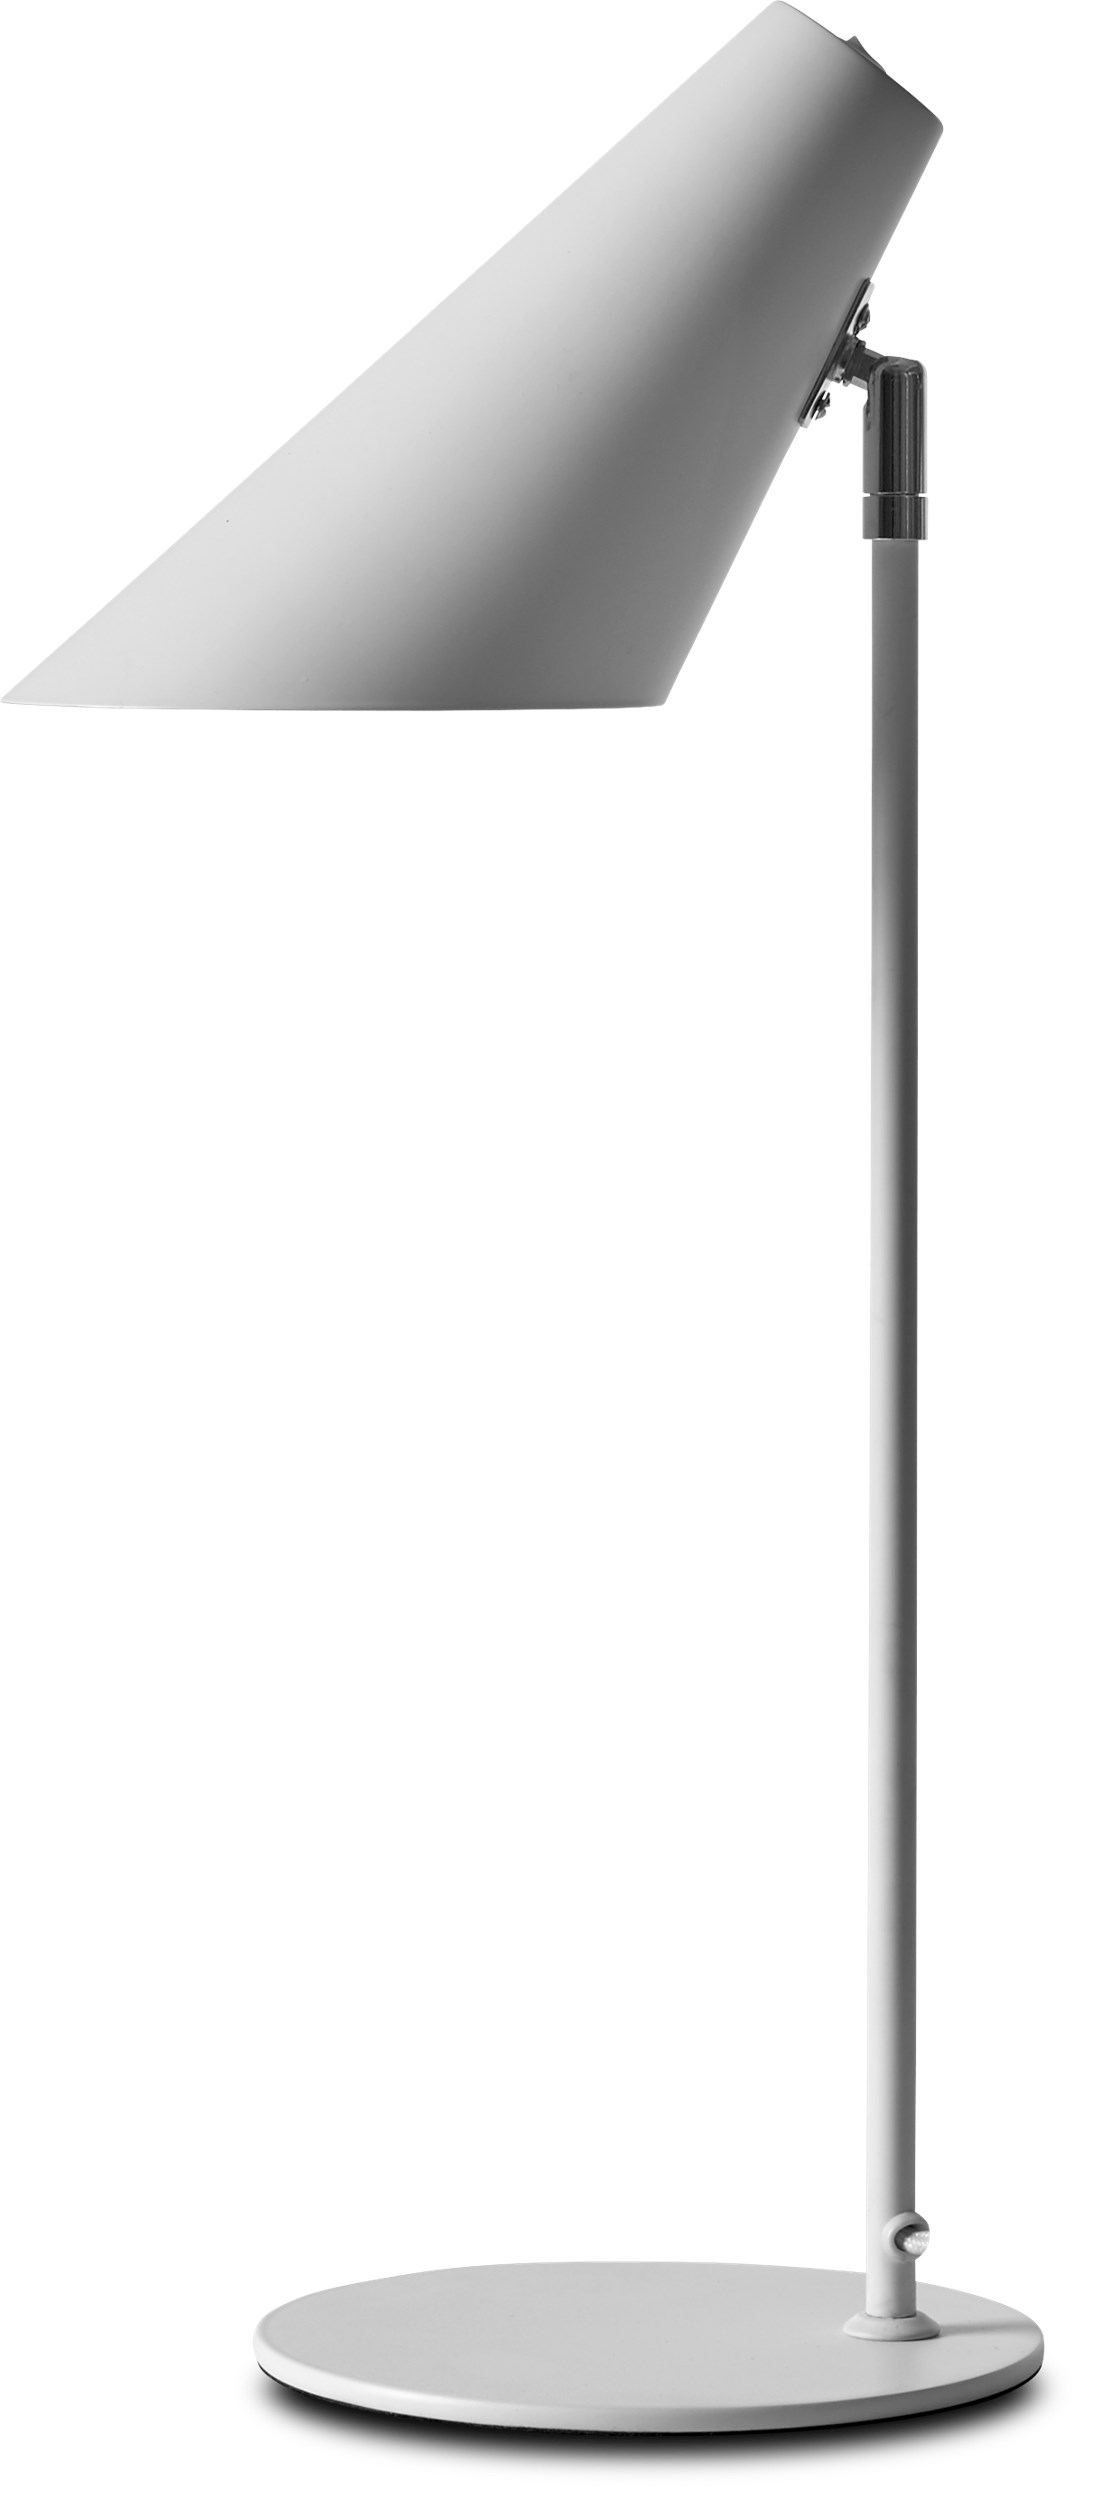 Cale Bordlampe 50 x 15,5 cm - Hvid metalskærm/base, stang i hvid/krom og hvid tekstilledning